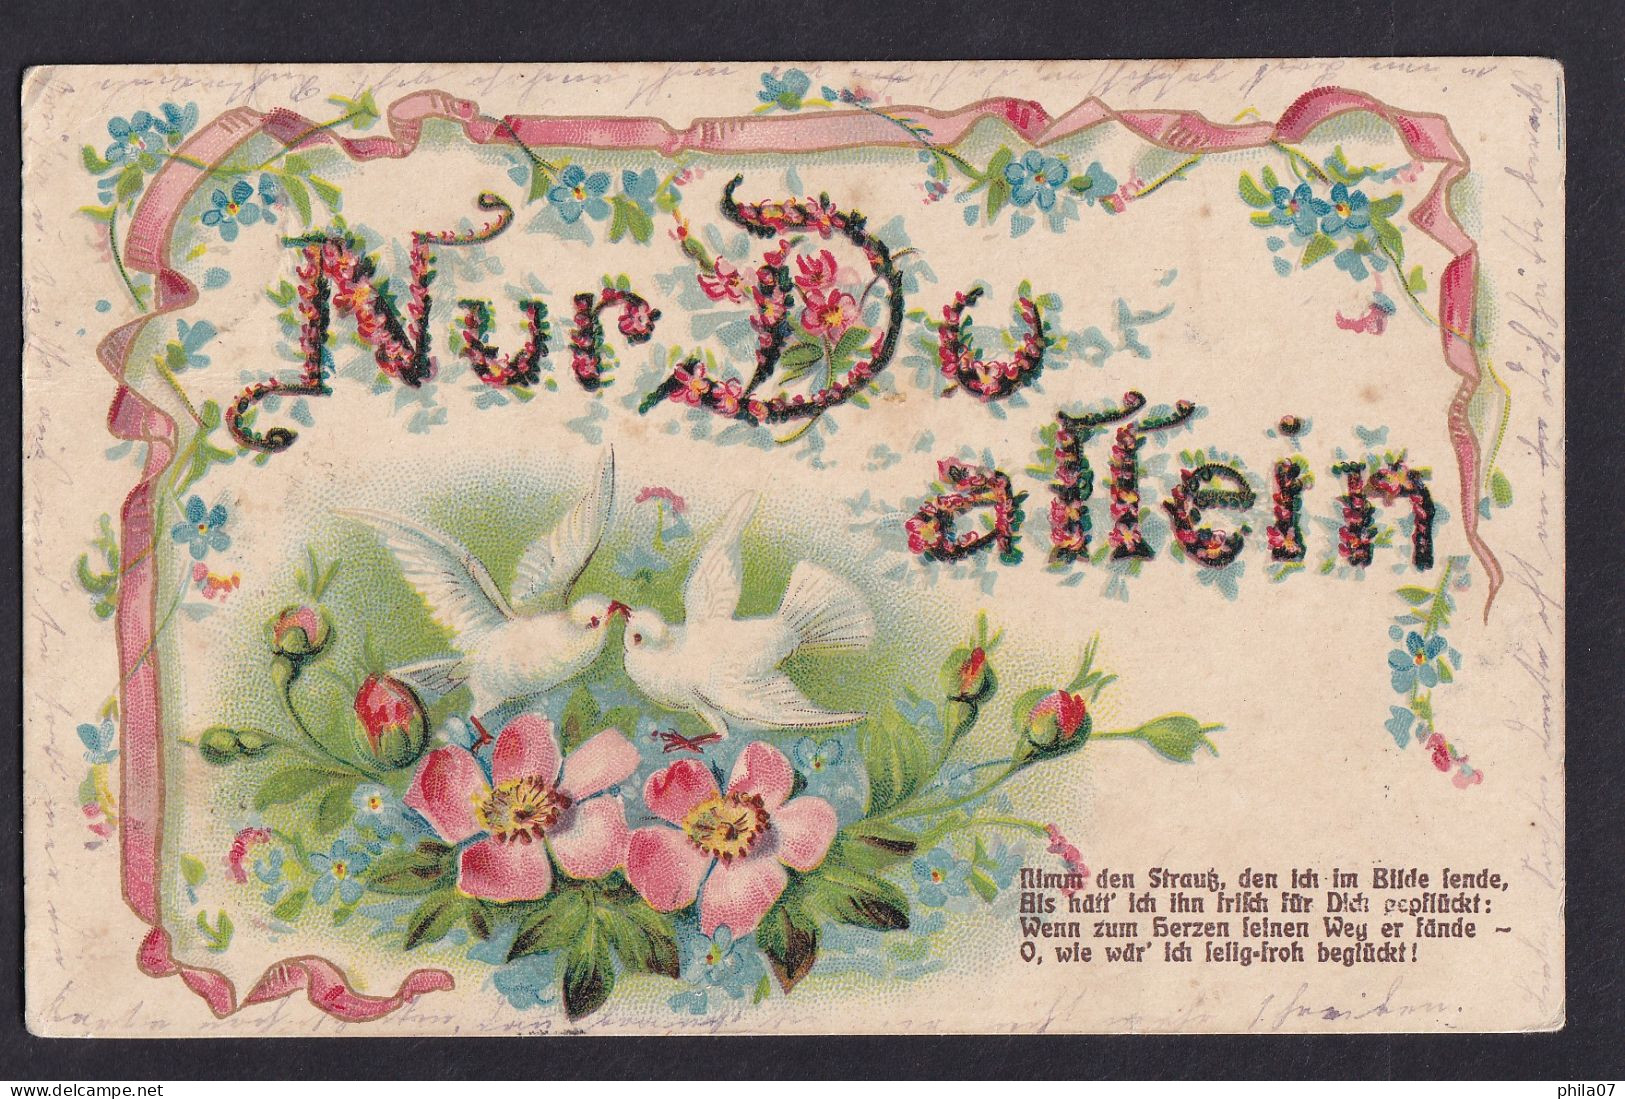 Nur Du Allein ... / Postcard Circulated, 2 Scans - Valentijnsdag